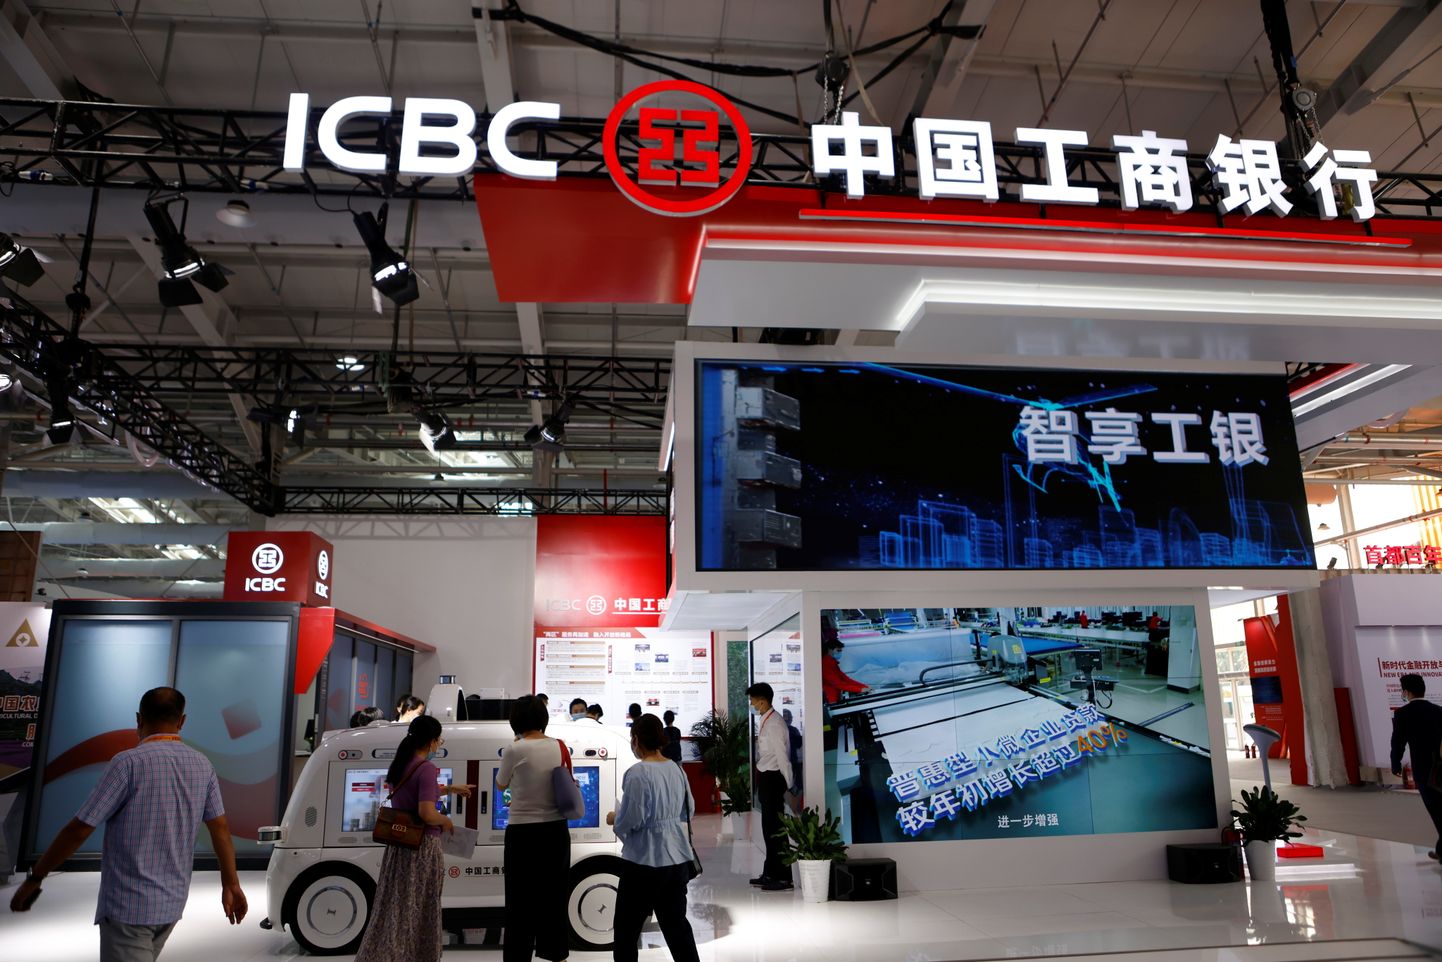 ICBC kuulub Hiina nelja suurpanga hulka